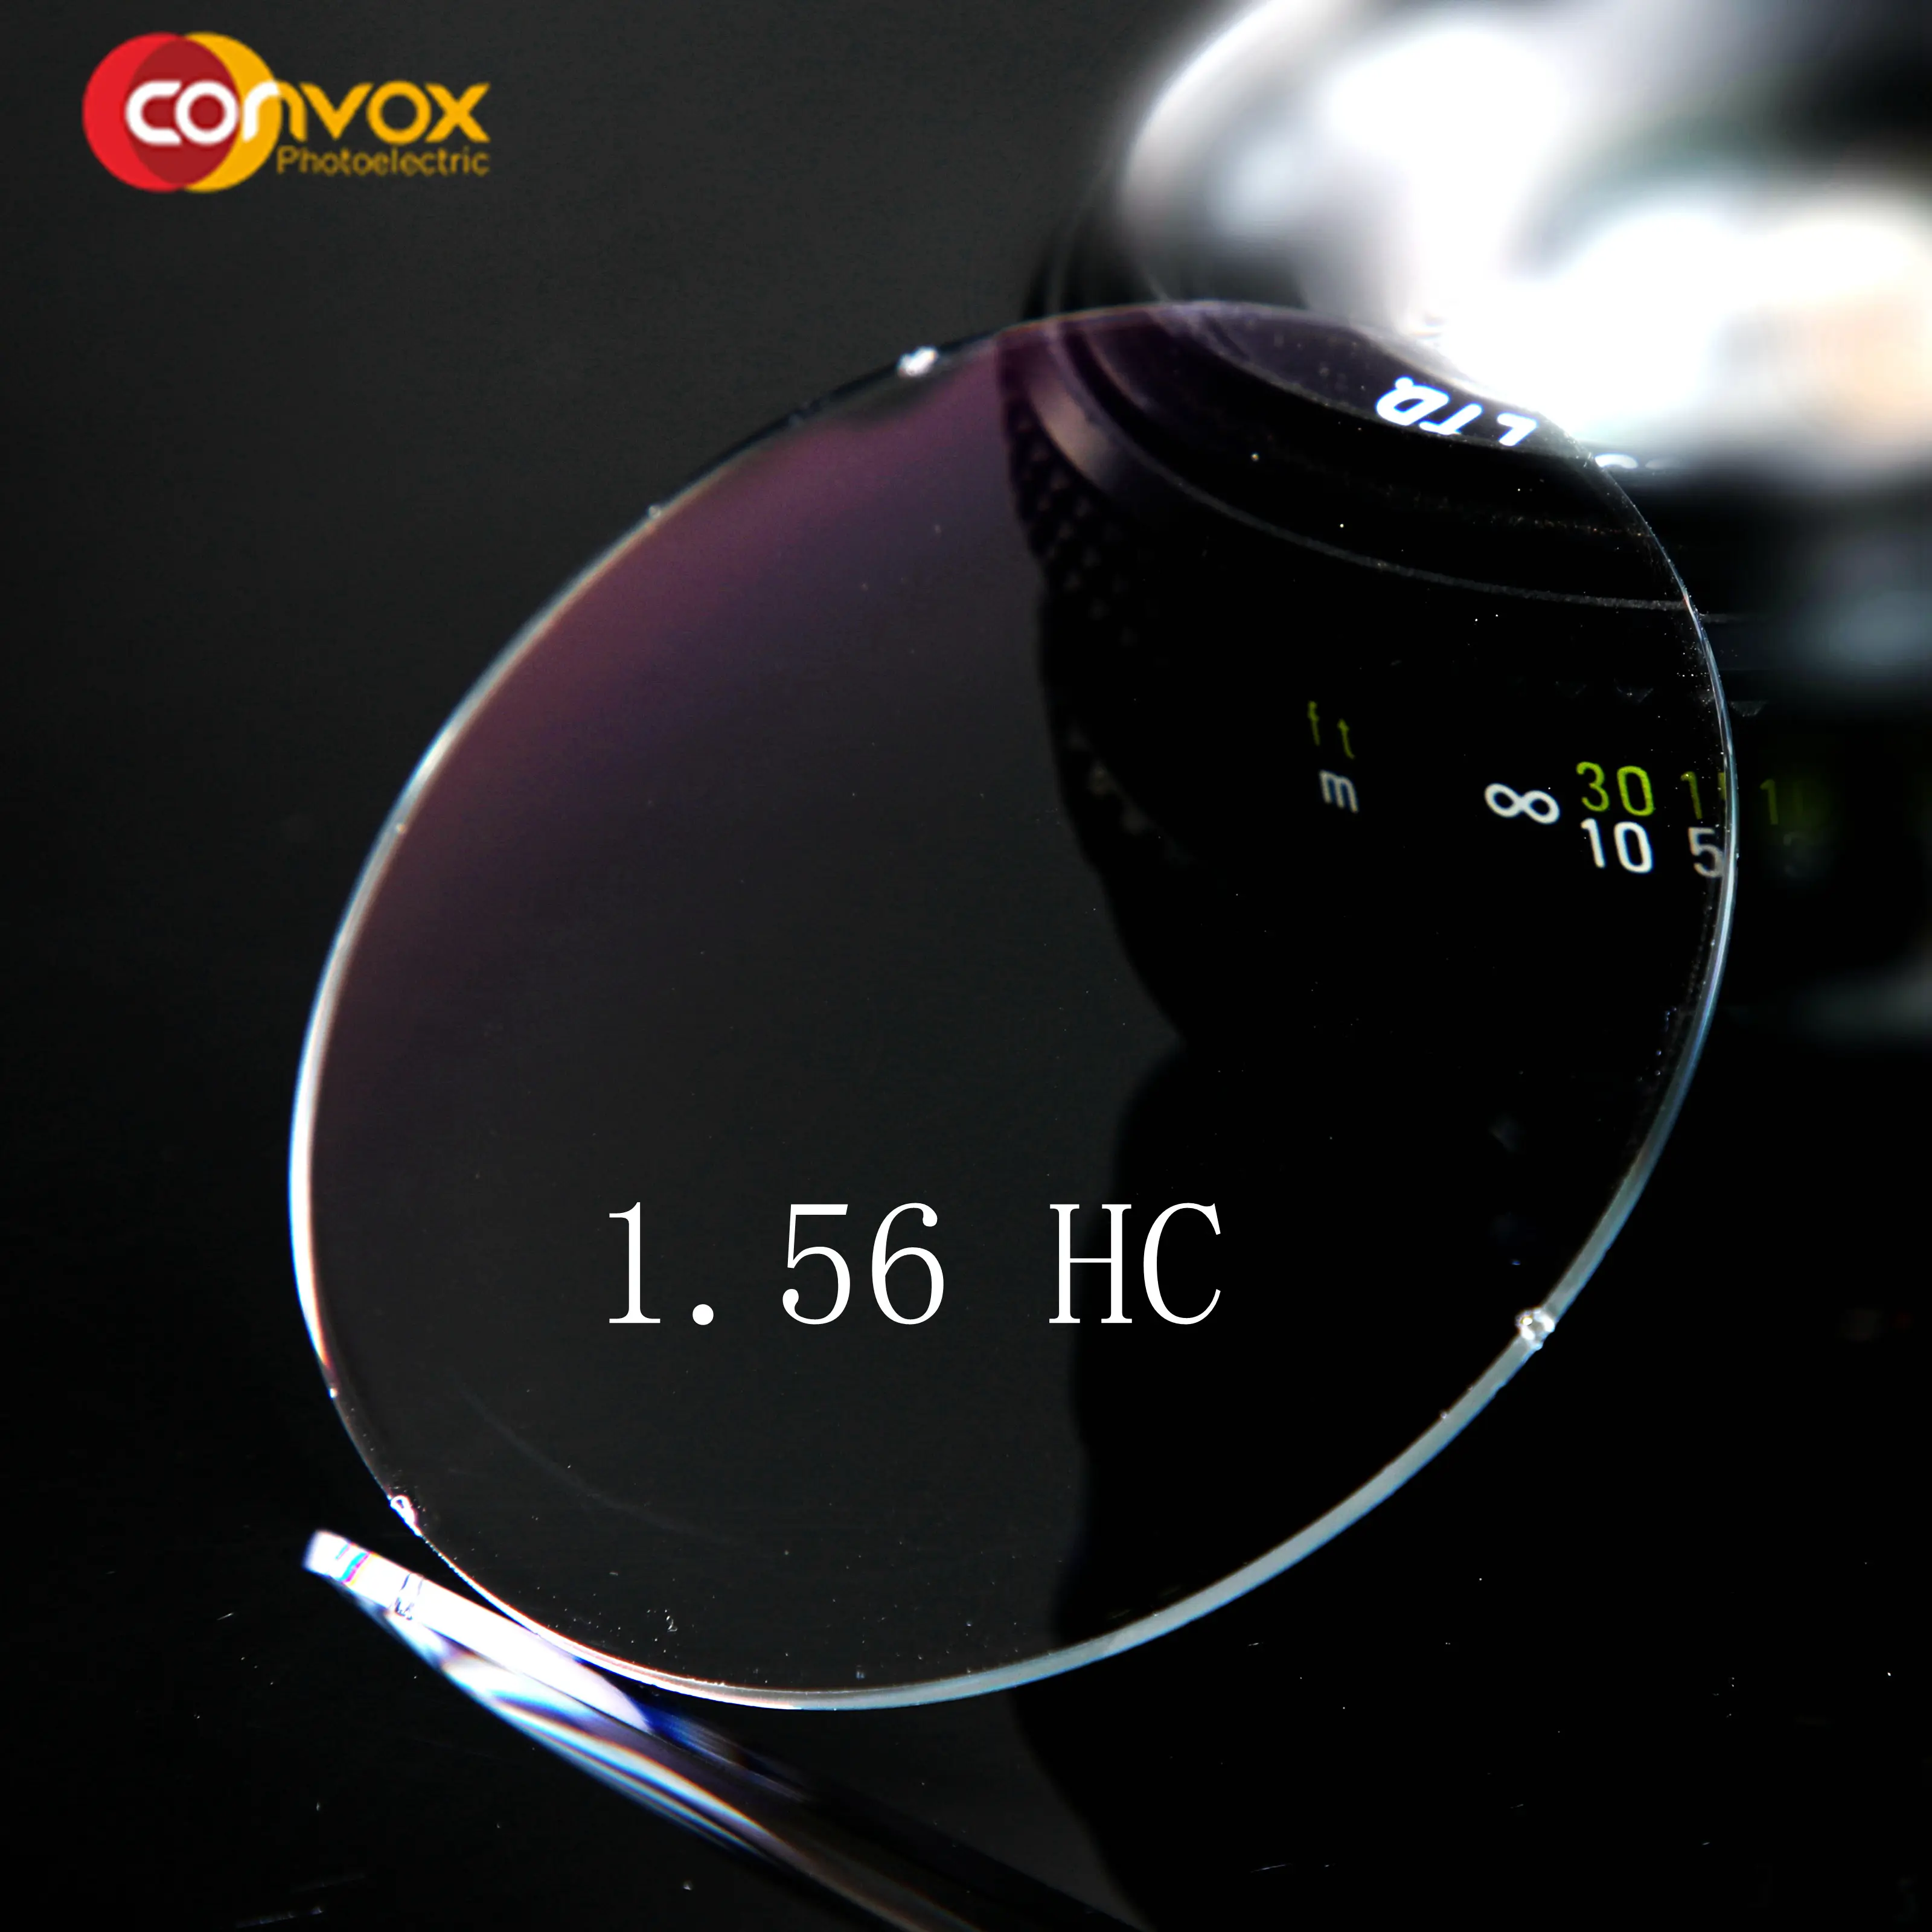 Convvox — manteau dur classique cr, lentille optique 1.56 hc